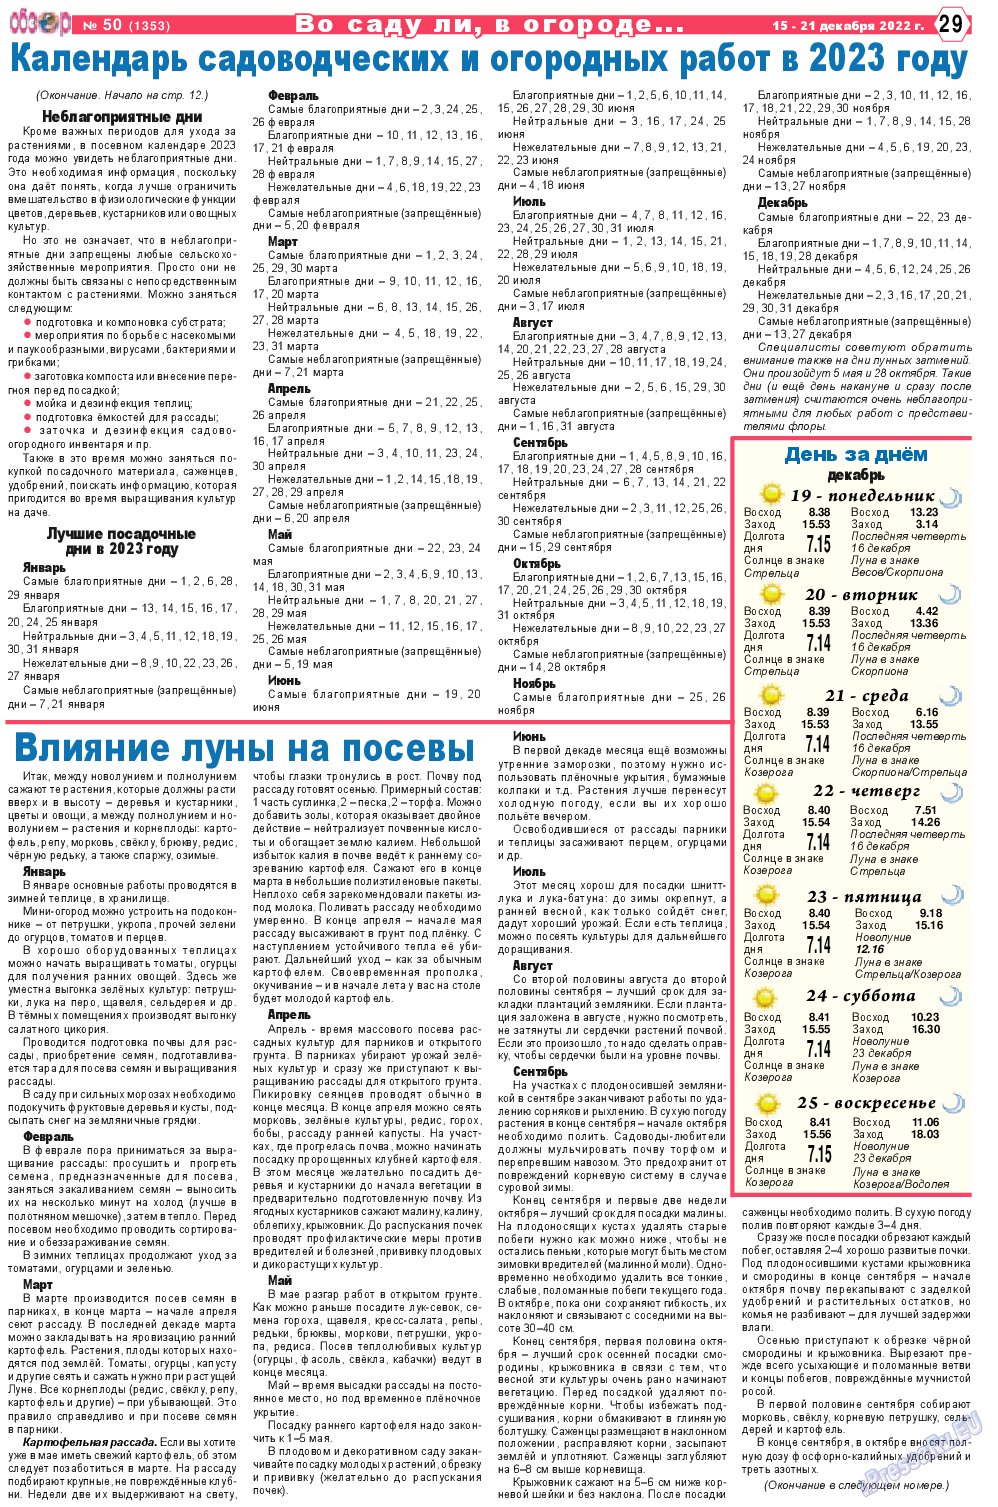 Обзор, газета. 2022 №50 стр.29